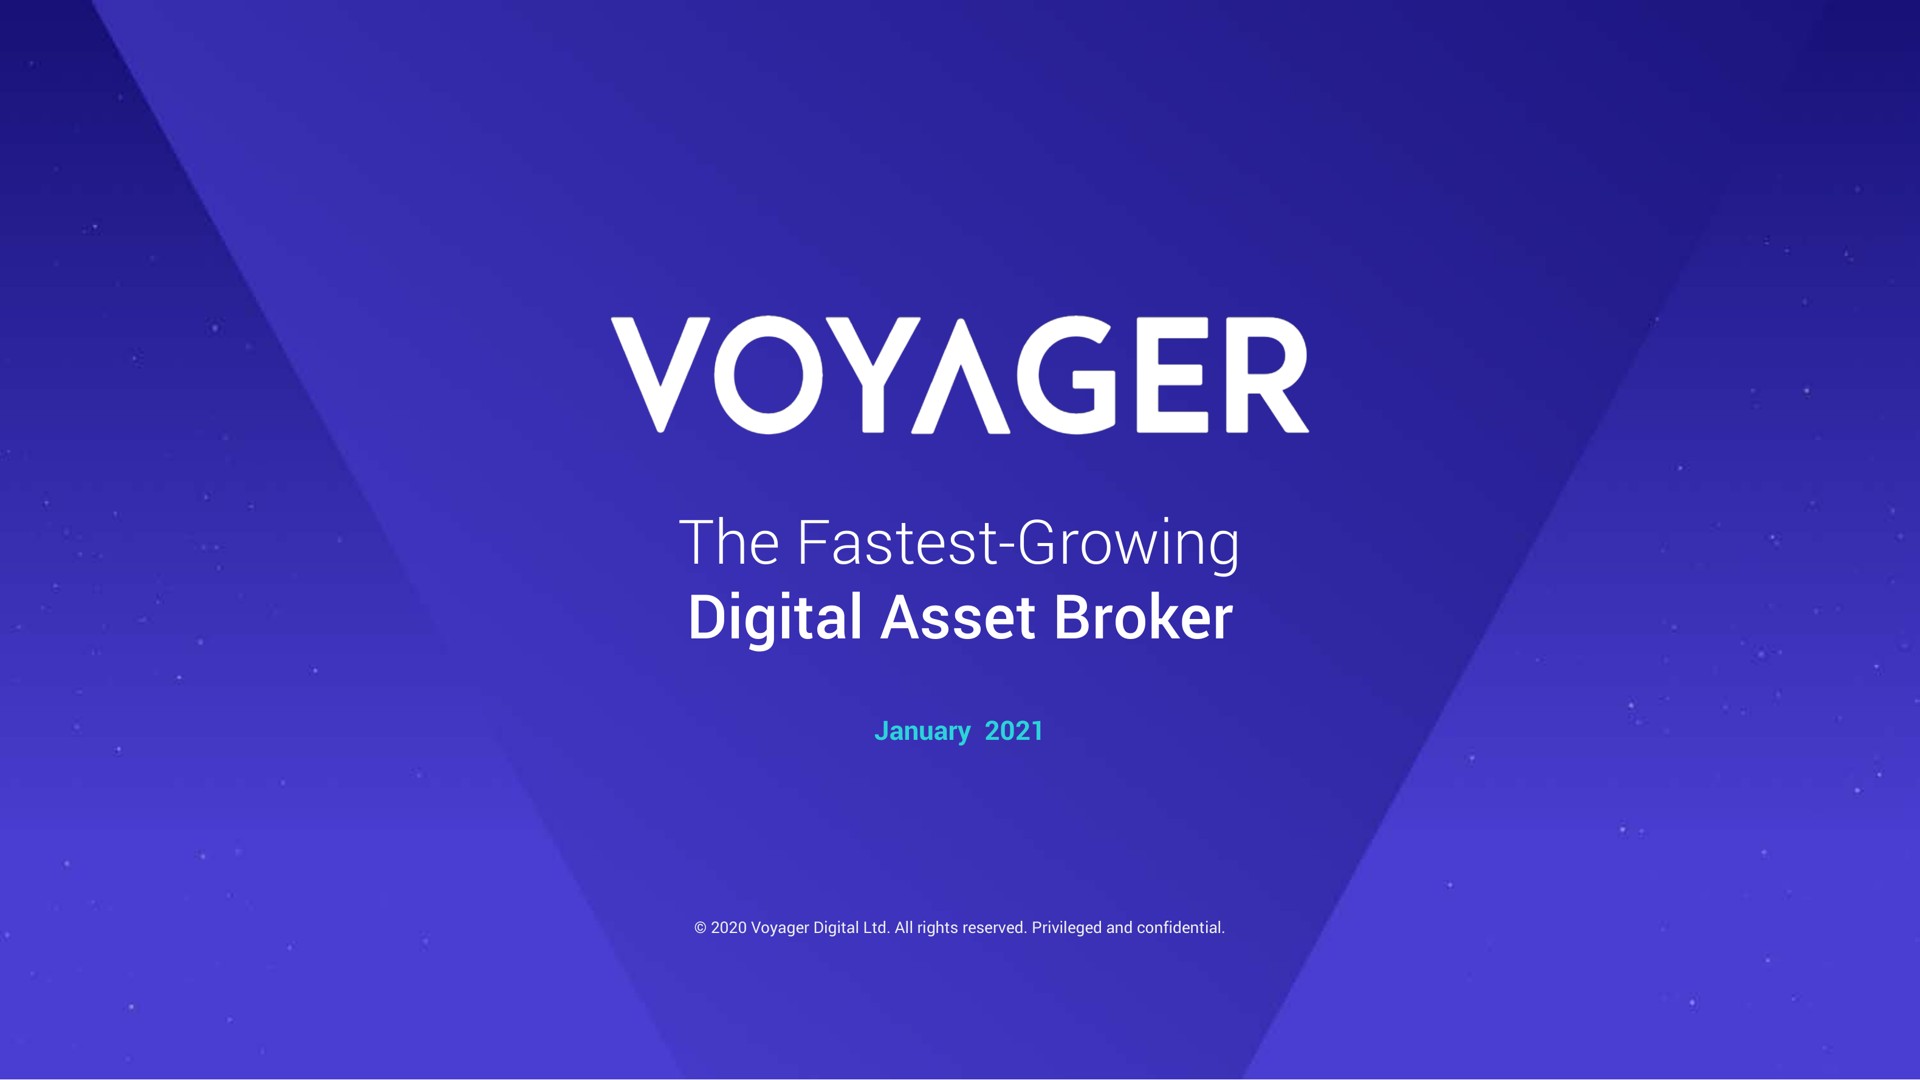 the growing digital asset broker voyager | Voyager Digital